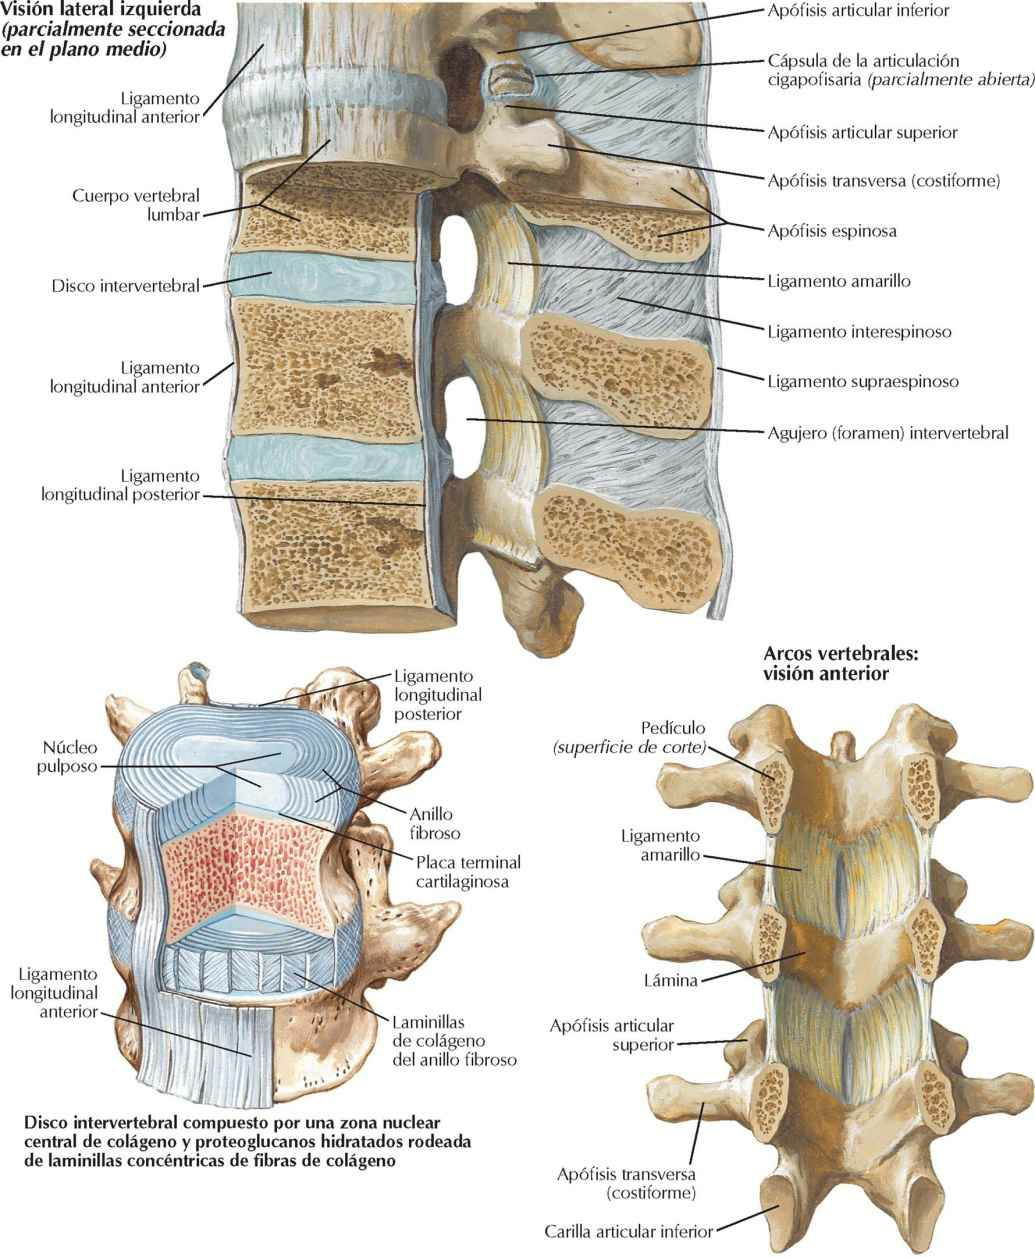 Ligamentos vertebrales: región lumbar